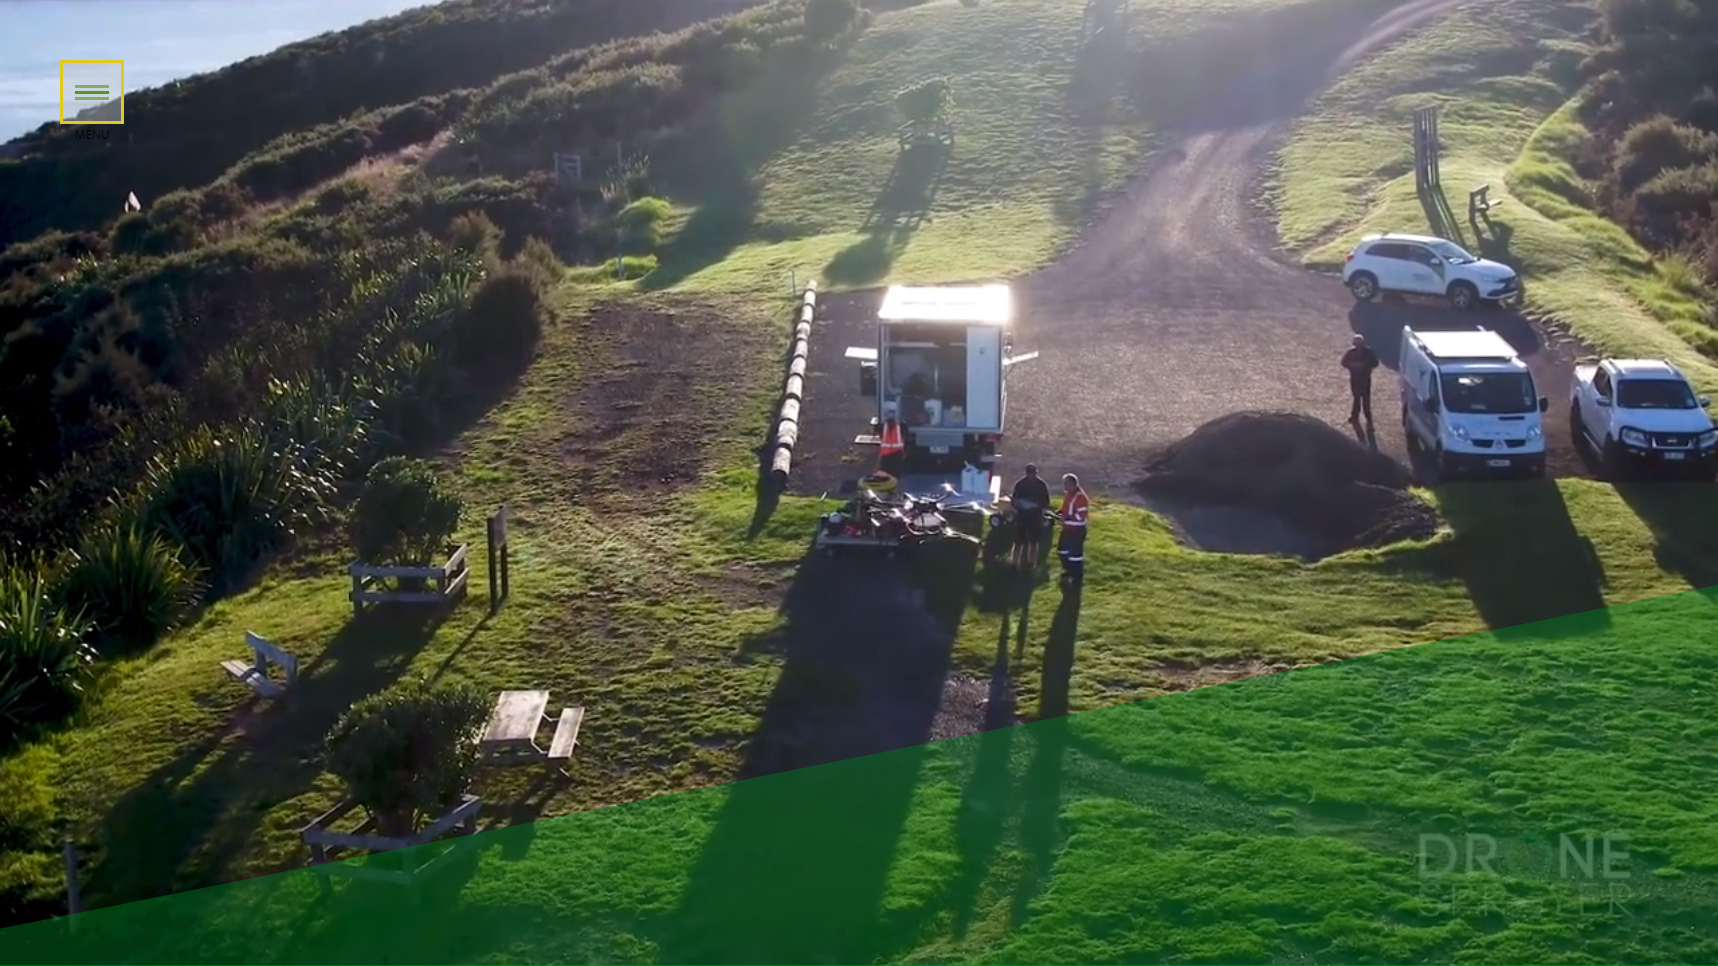 Drone Sprayer NZ - Crop Spraying Drone Manufacturer